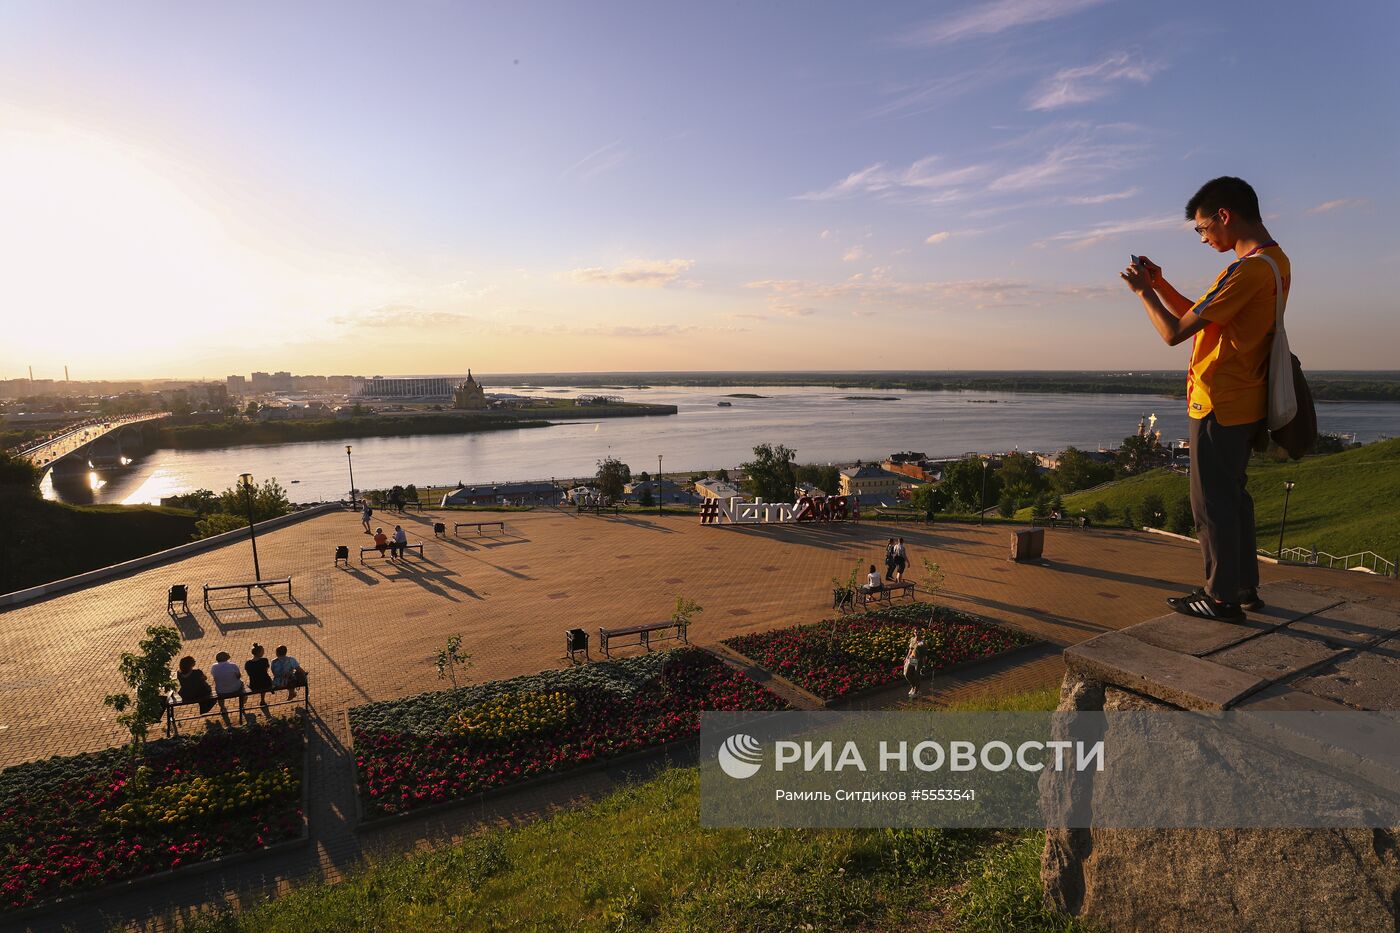 Нижний Новгород во время ЧМ-2018 по футболу